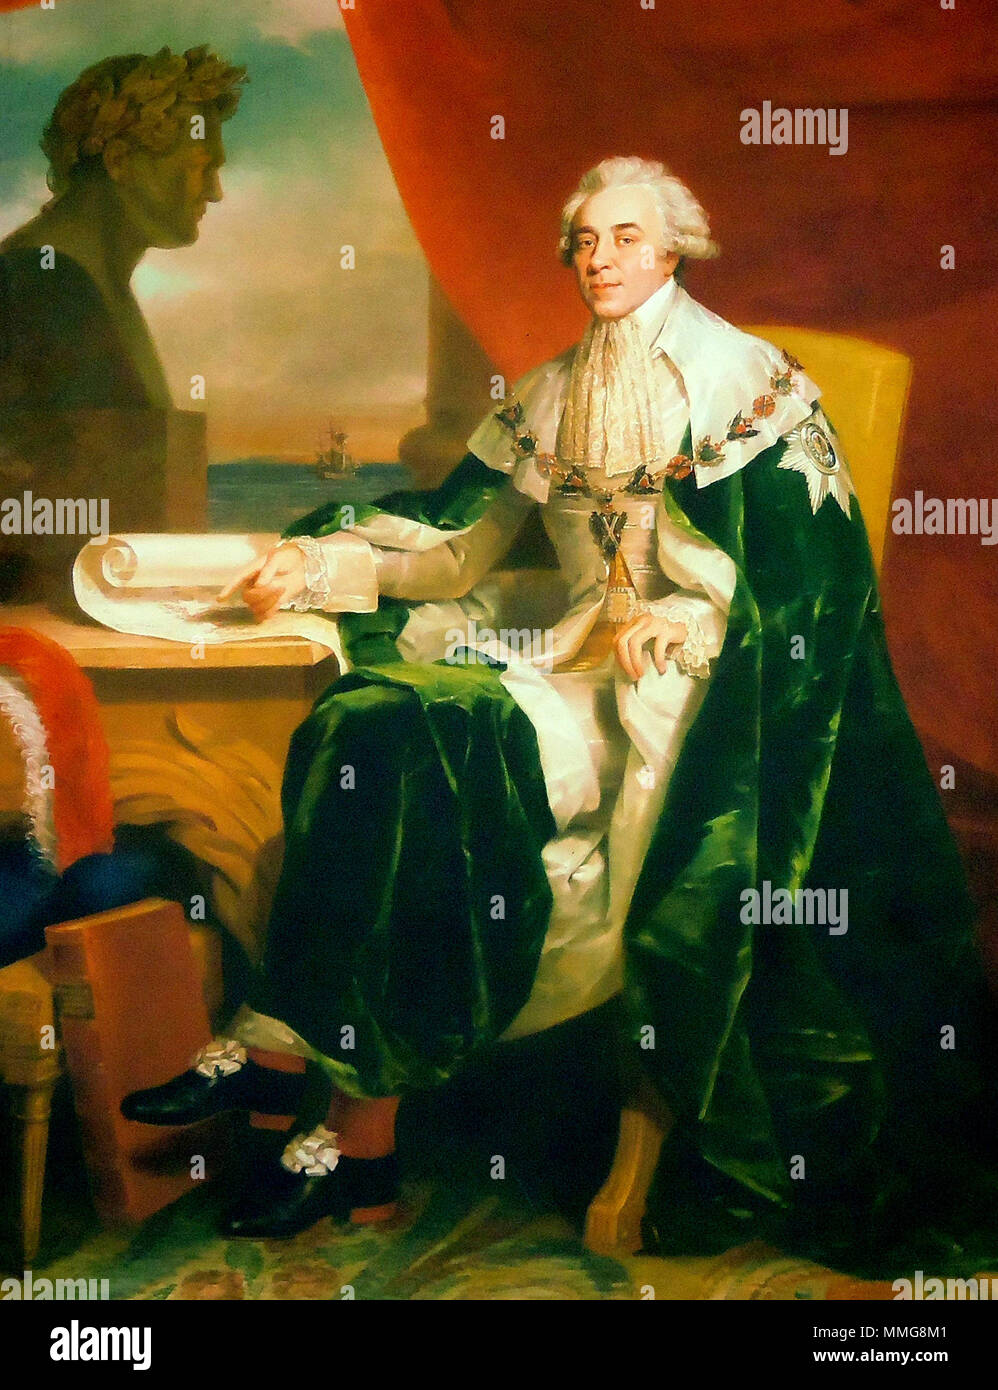 Comte Nikolai Petrovitch Rumyantsev (1754 - 1826), la Russie Ministre des affaires étrangères et Chancelier de l'Empire Russe Banque D'Images